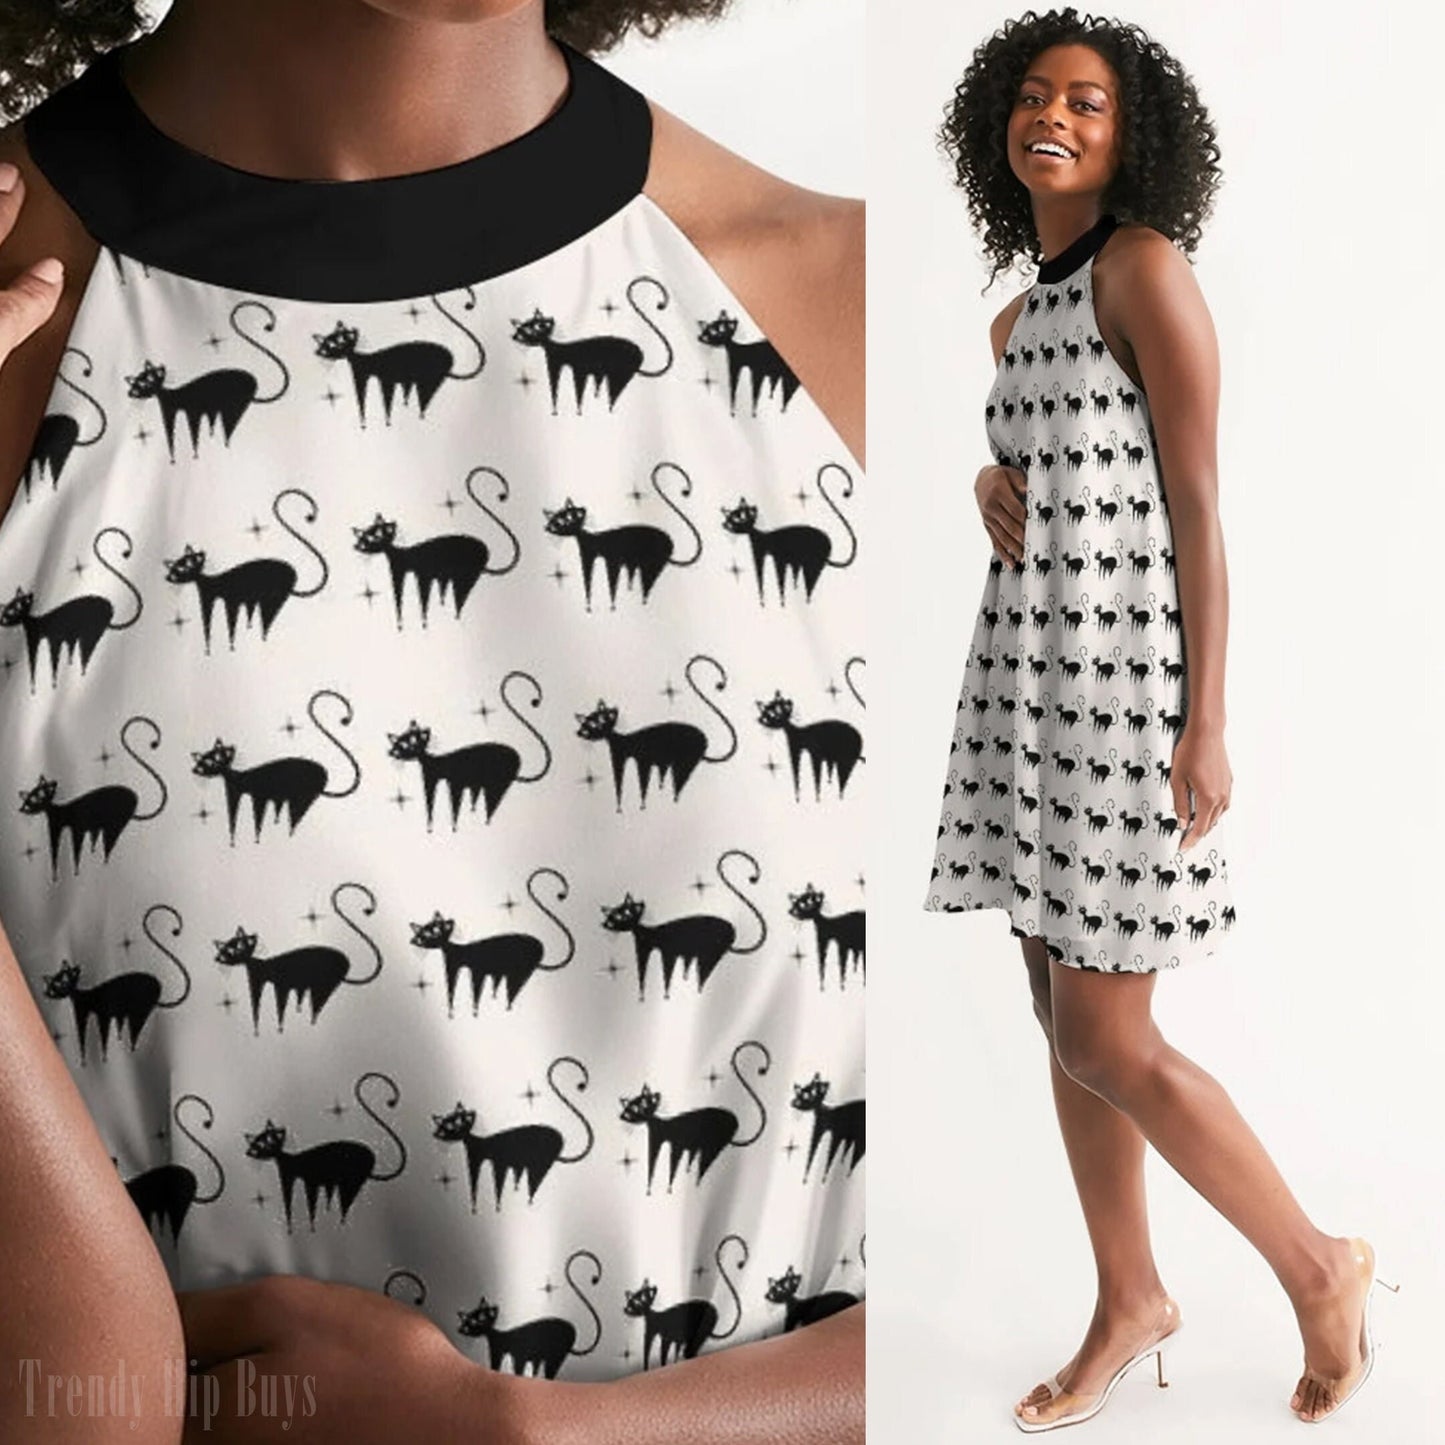 Katzenkleid, Retro-Kleid, Neckholder-Kleid, schwarzes Katzen-Print-Kleid, Vintage-Stil-Kleid, 50er-Jahre-inspiriertes Katzen-Print-Kleid, Animal-Print-Kleid, 50er-Jahre-inspiriert